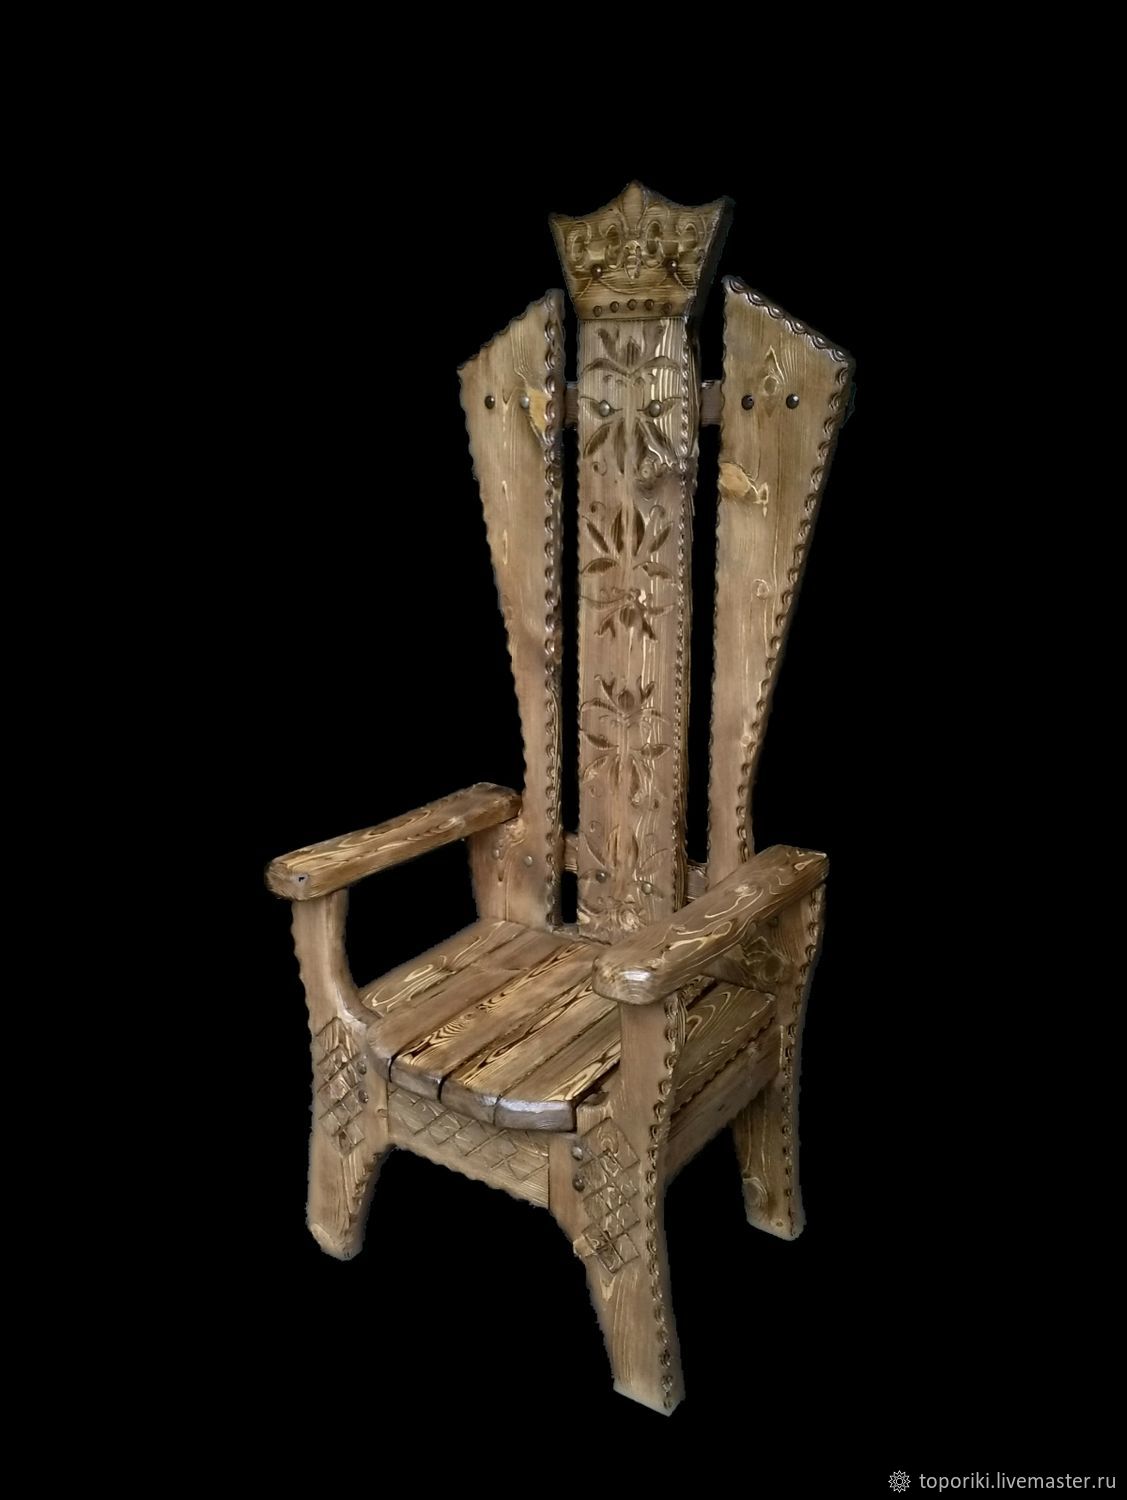 Кресла-троны: из дерева и других материалов. Достоинства и недостатки